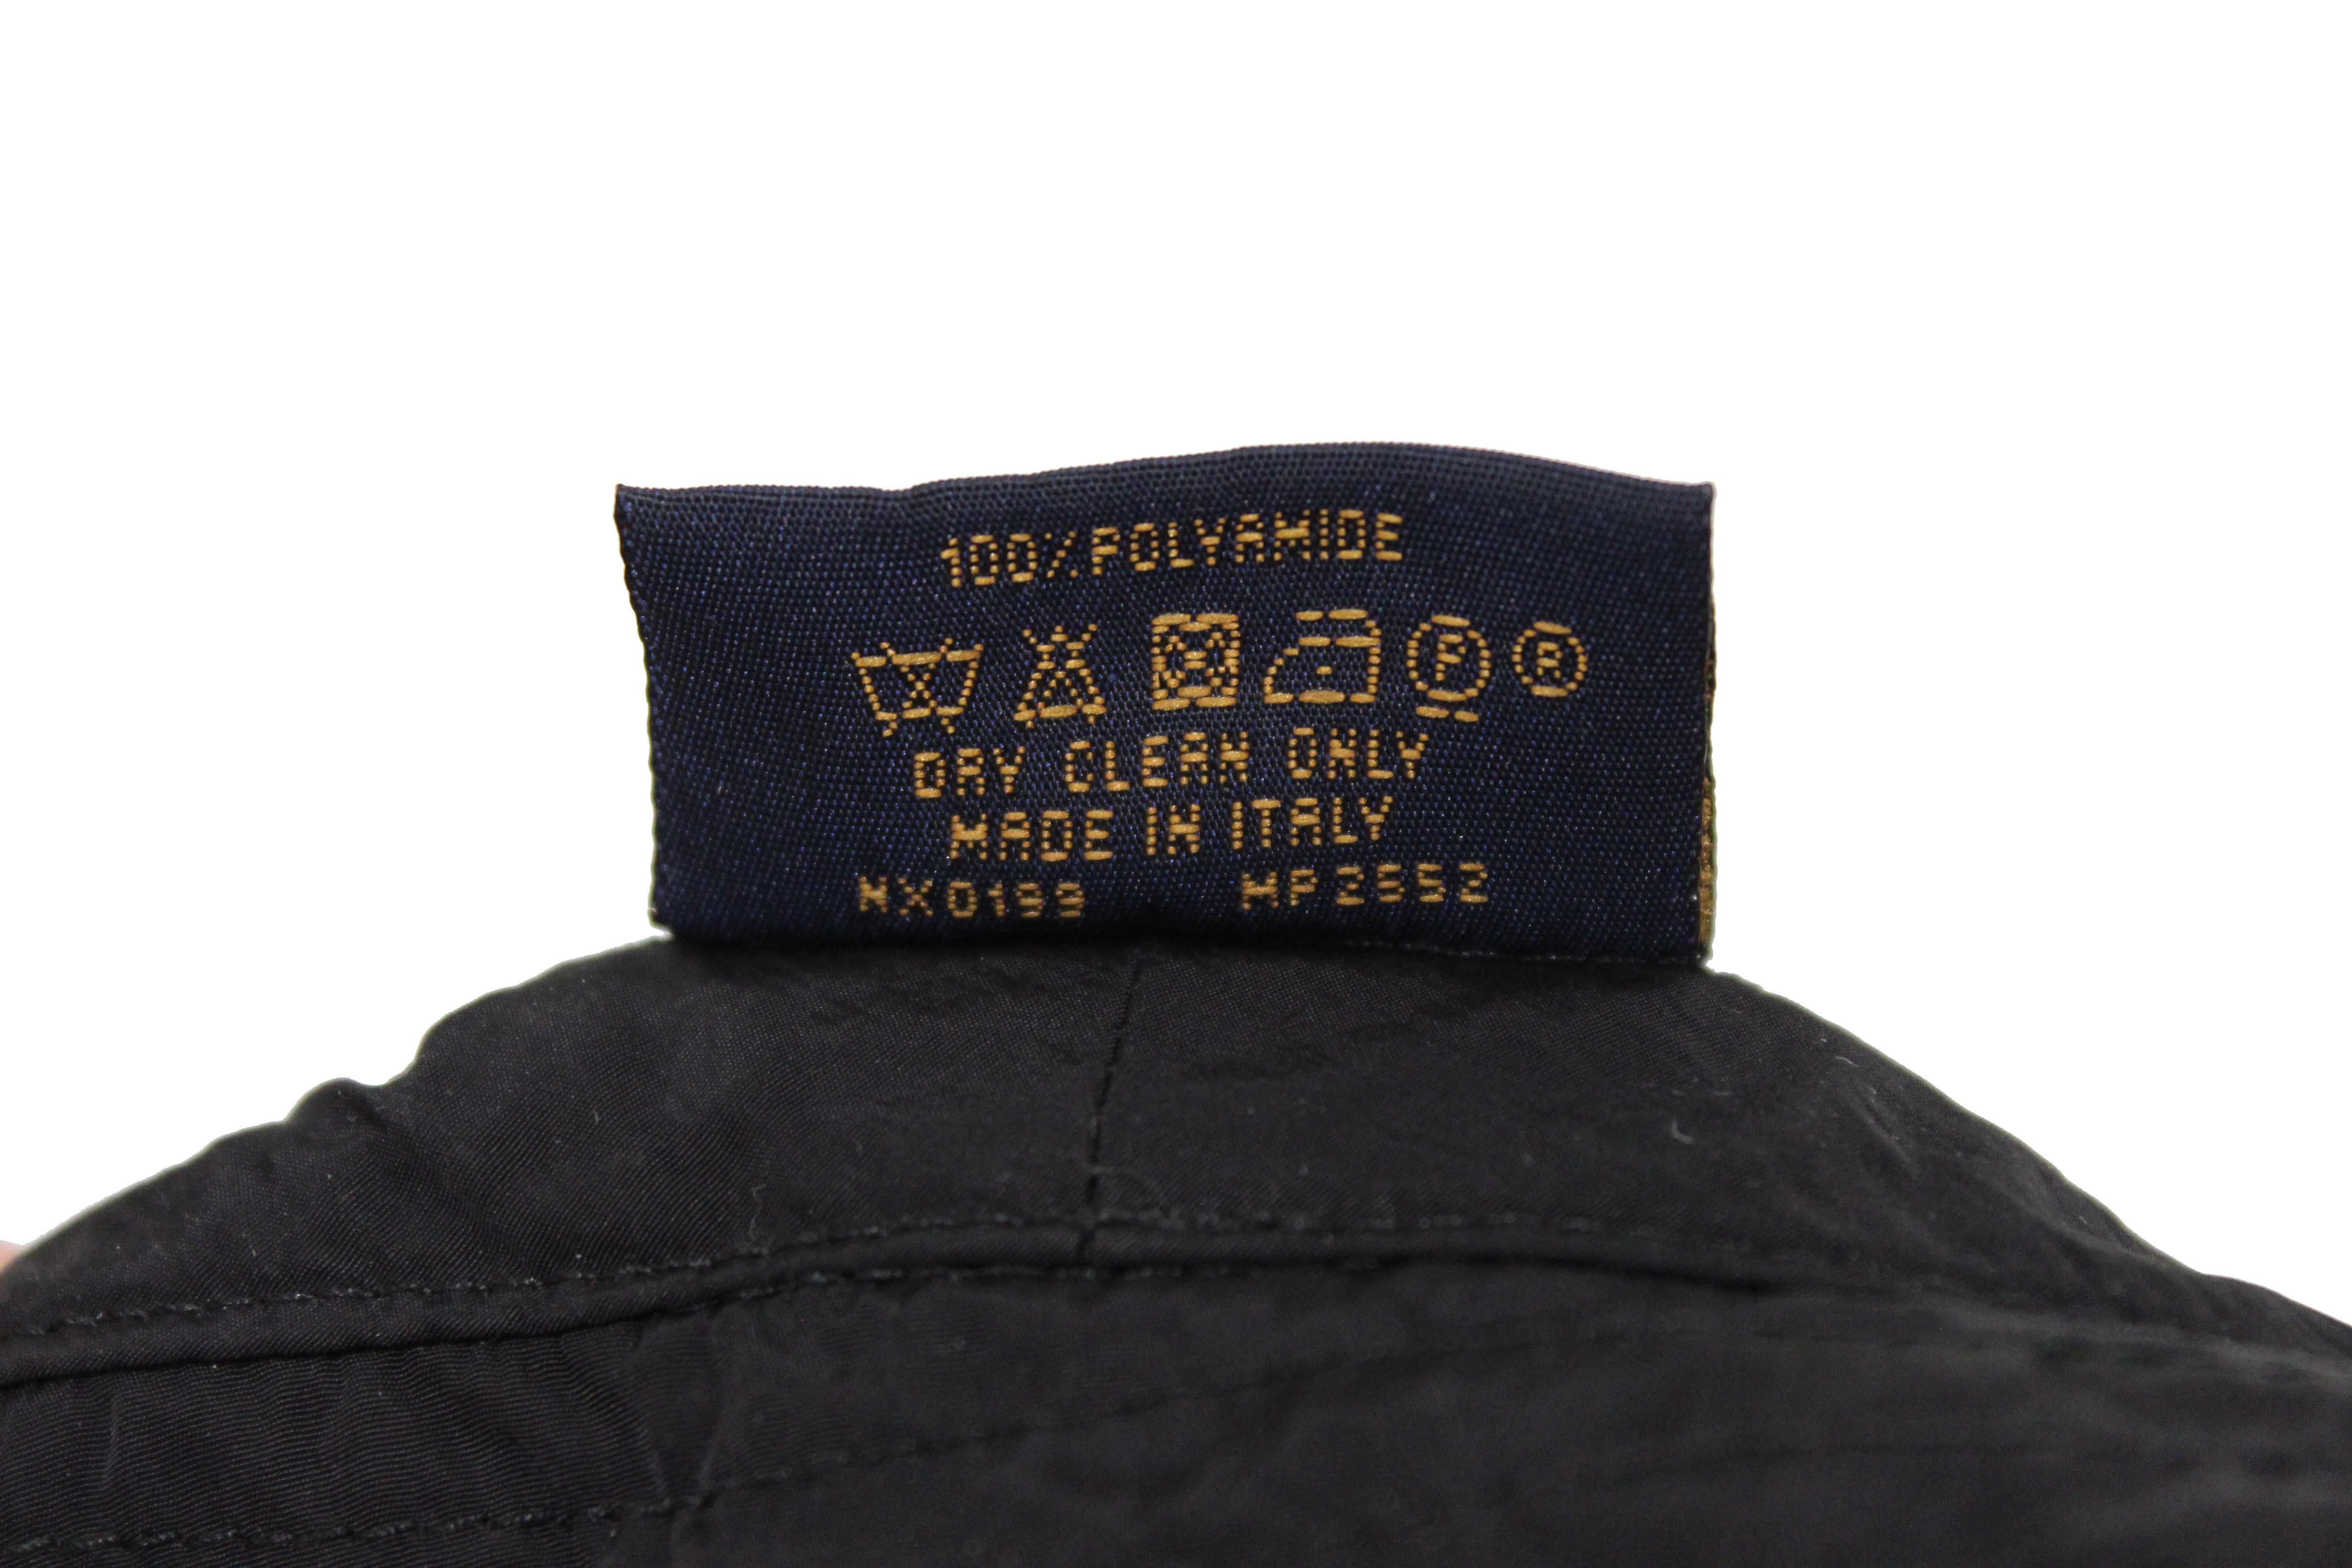 Authentic Louis Vuitton Black Nylon 2054 Packable Bob Hat